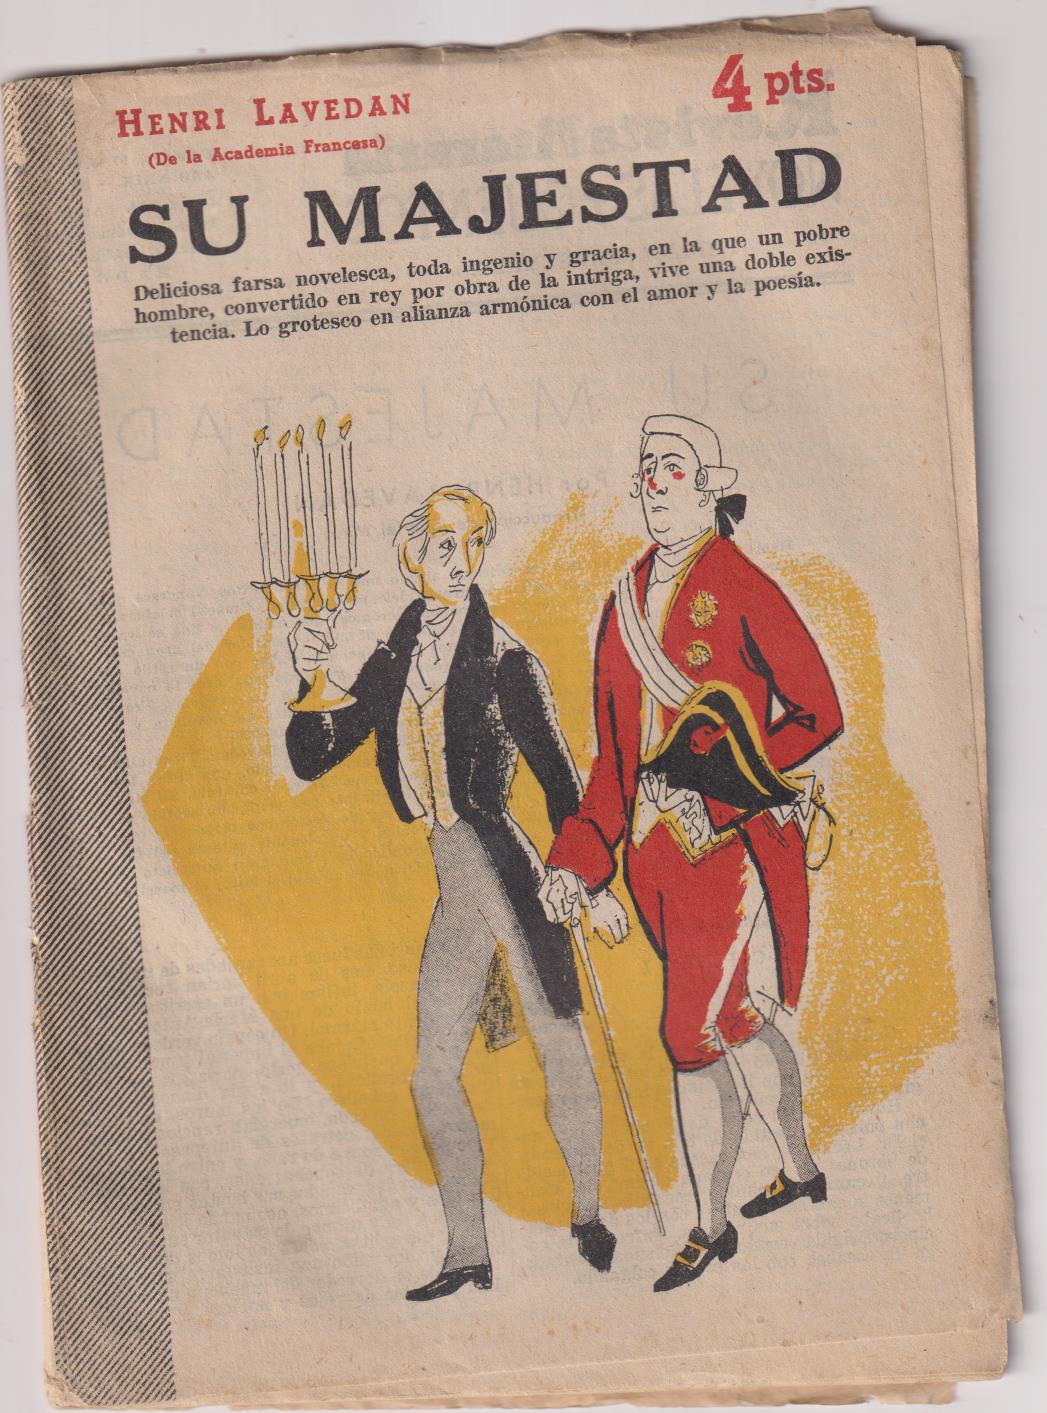 Revista Literaria Novelas y Cuentos nº 1281. Su majestad por Henri Lavedan, 1957